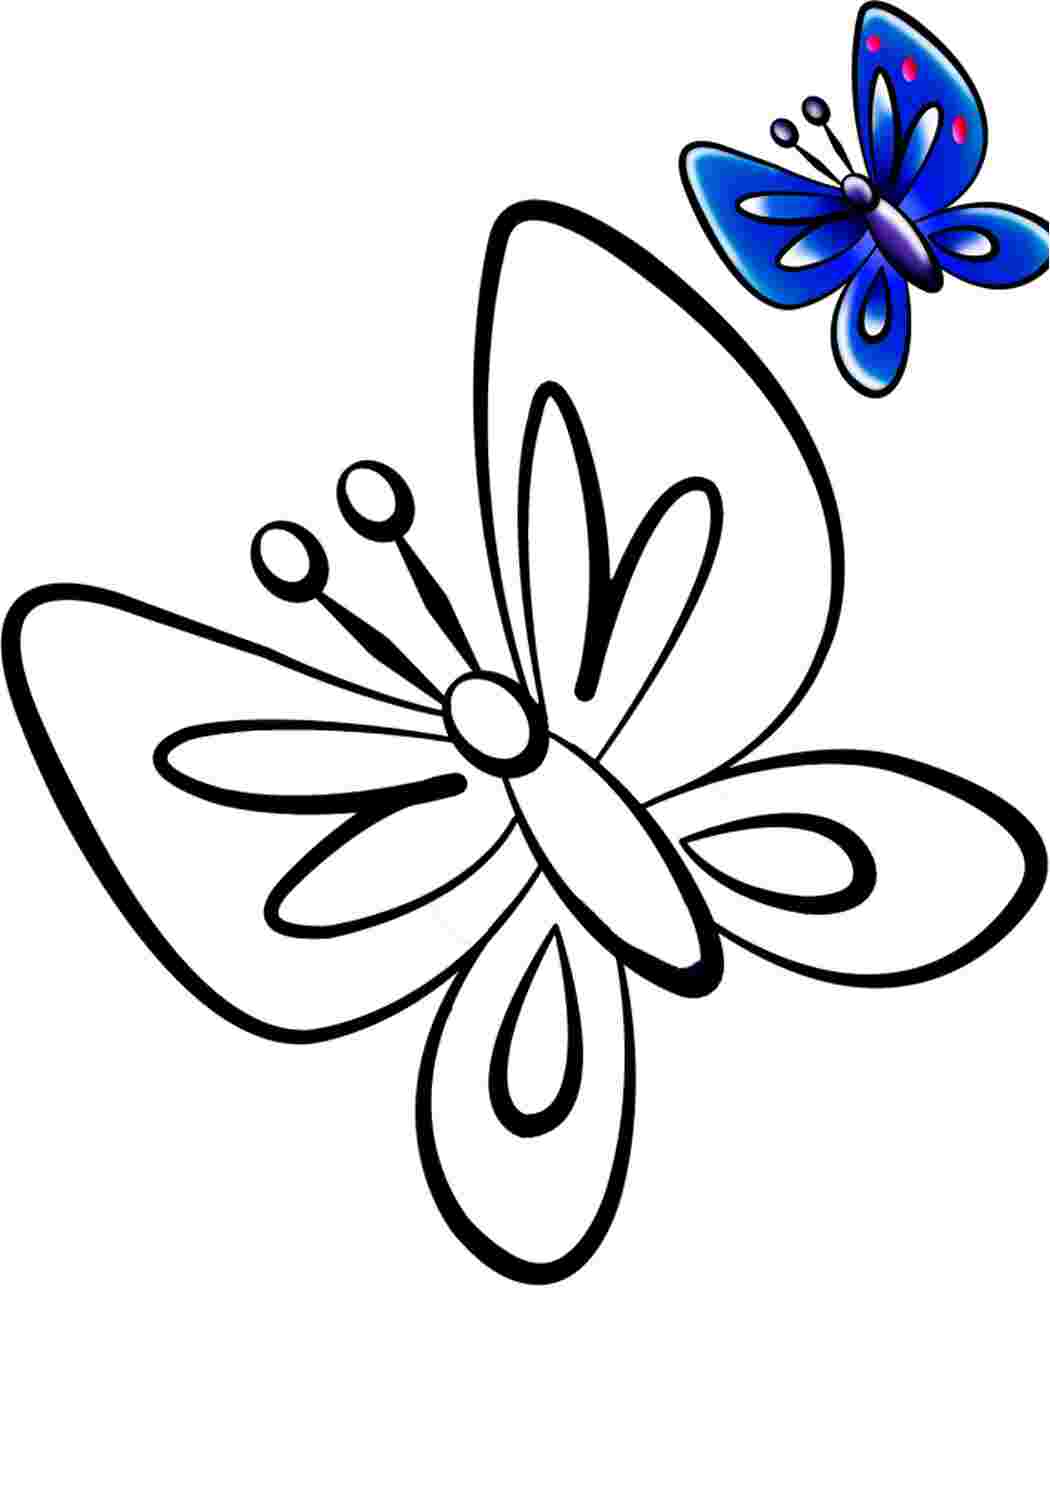 Раскраска 2 бабочки. Бабочка раскраска для детей. Бабочка для раскрашивания для детей. Бабочка раскраска для малышей. Детская раскраска бабочка.